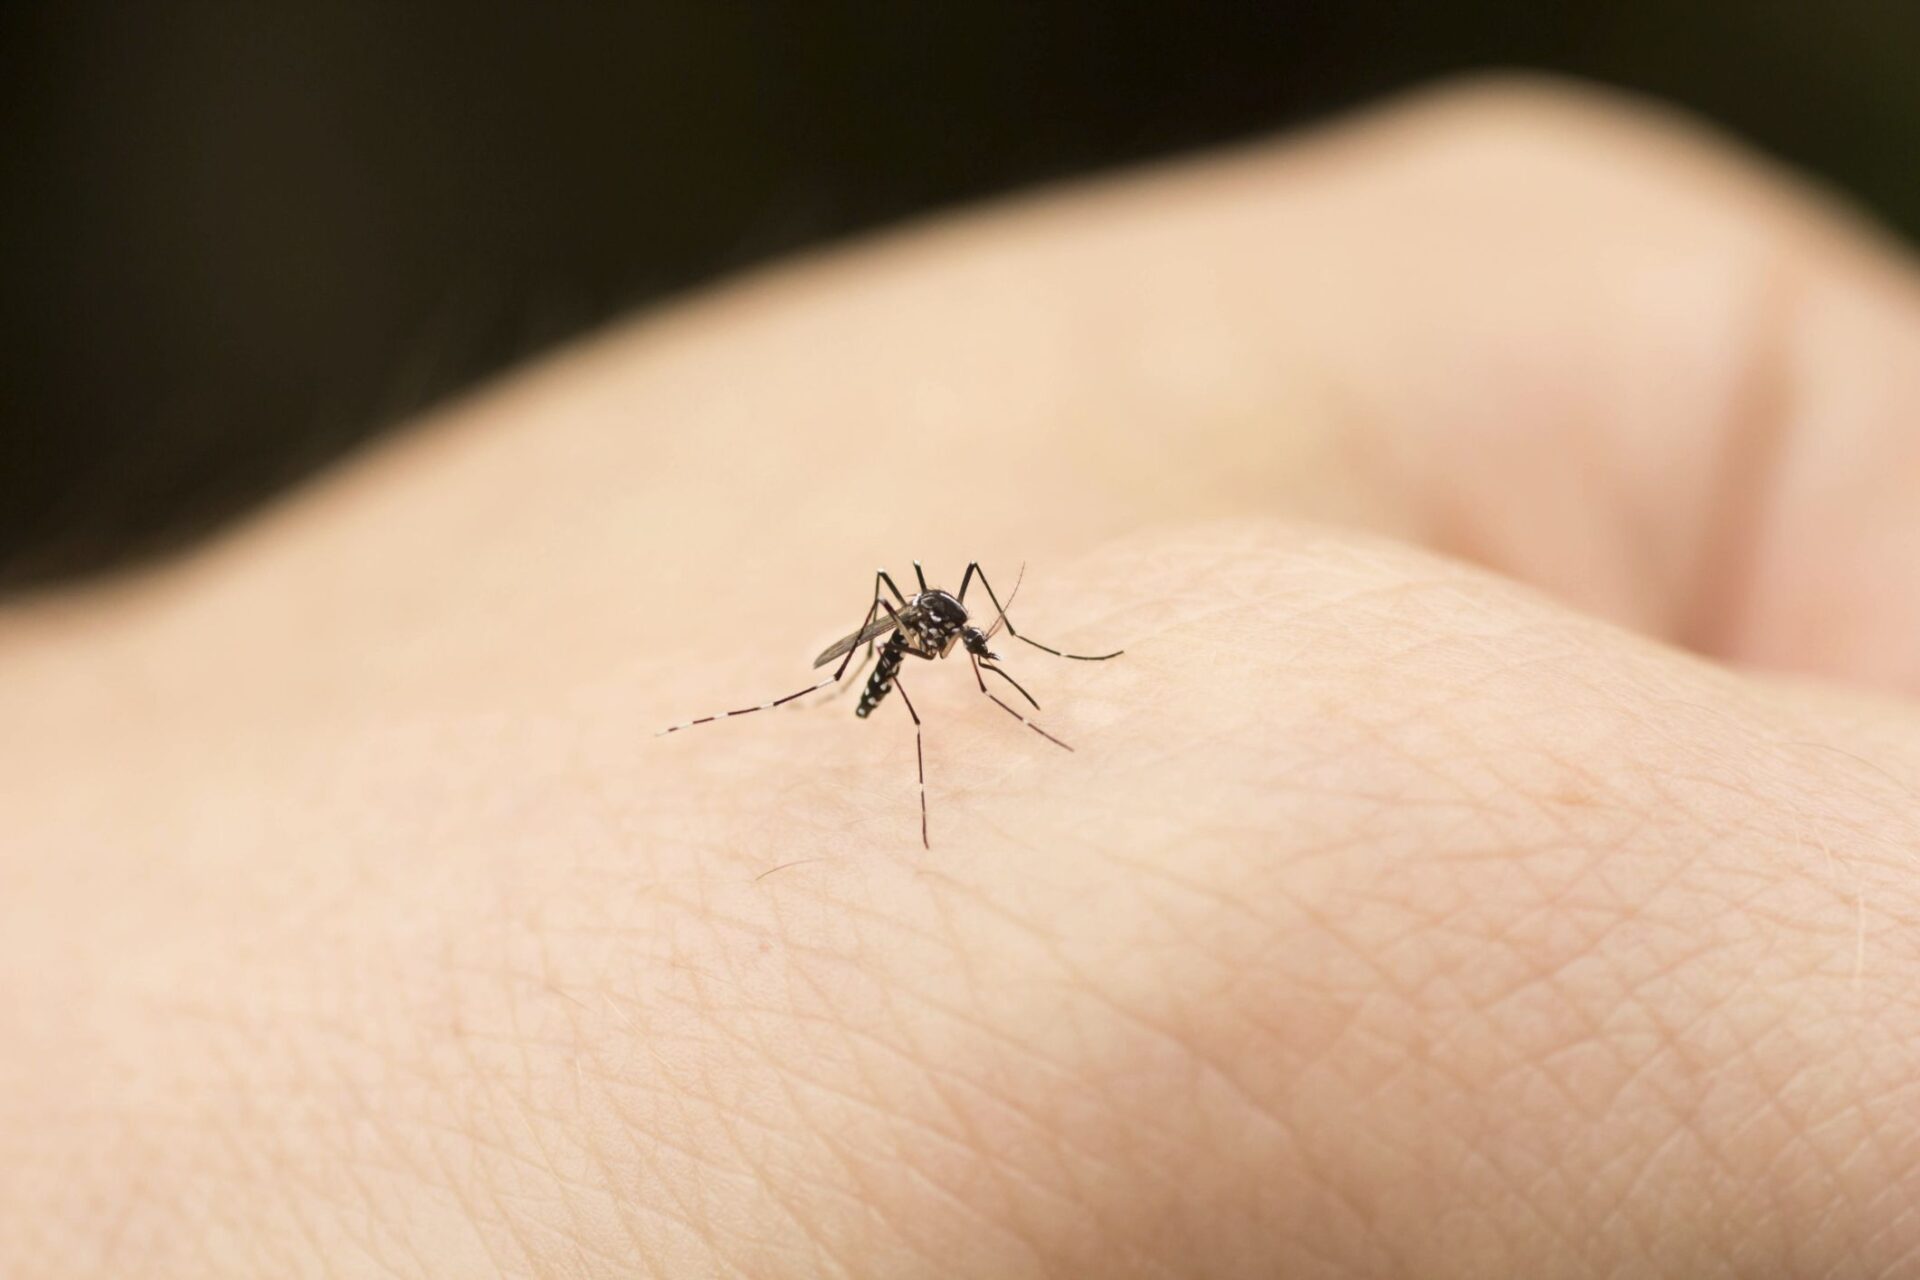 Zanzare in casa: come allontanarle senza veleni